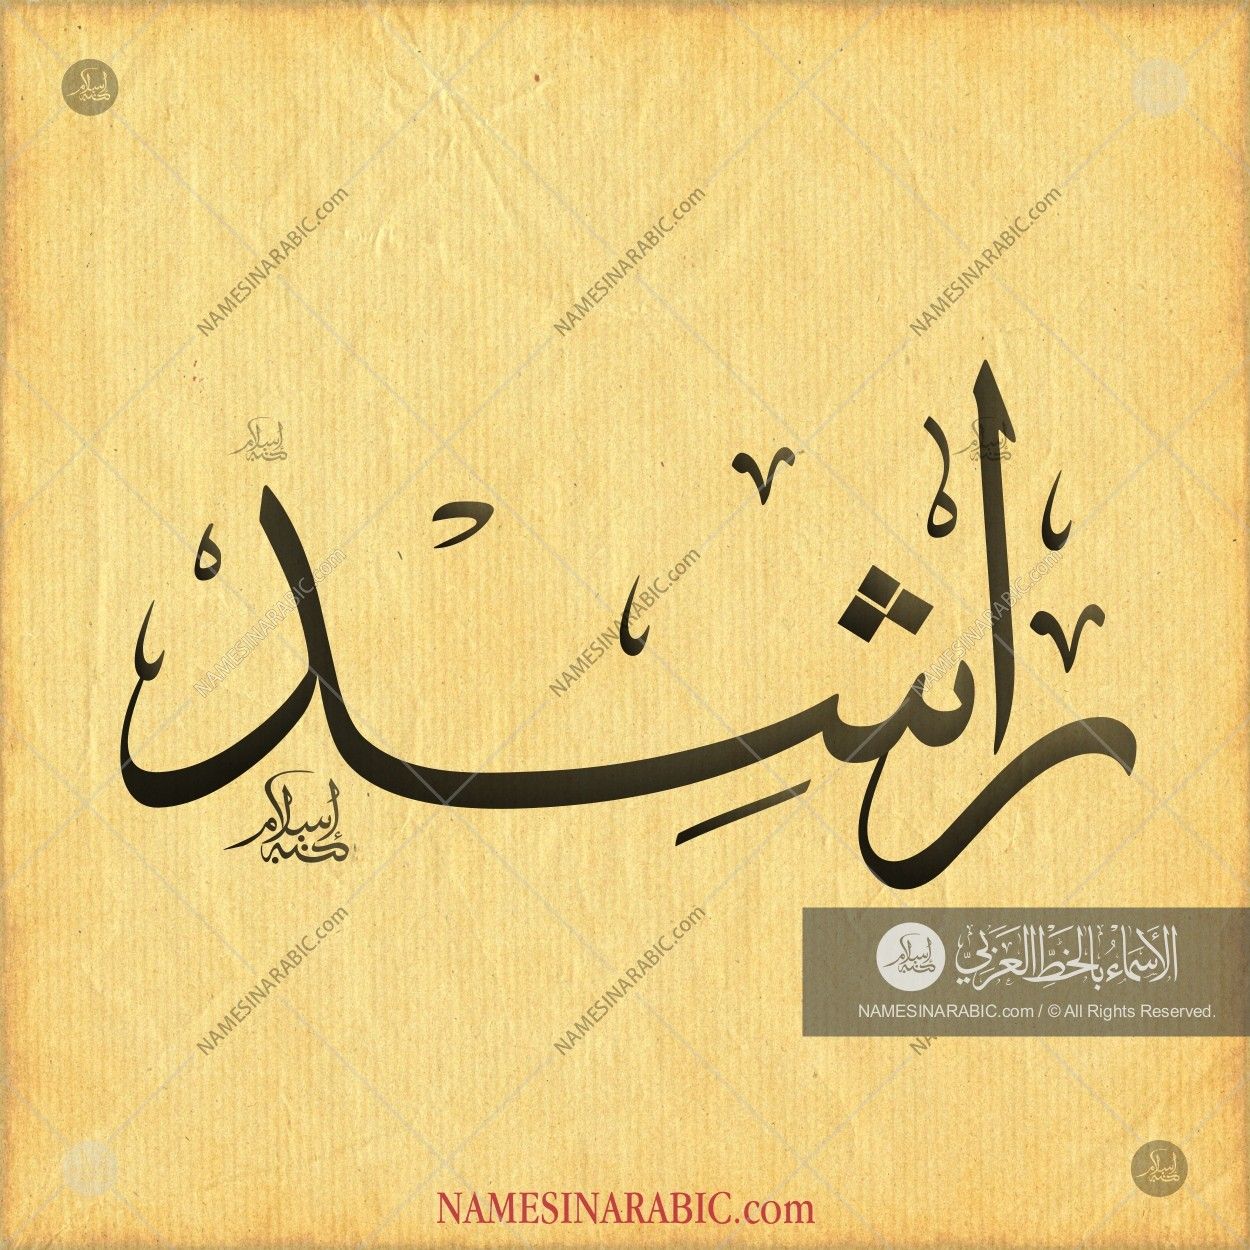 راشد / Names In Arabic Calligraphy - Rashid Name In Arabic , HD Wallpaper & Backgrounds